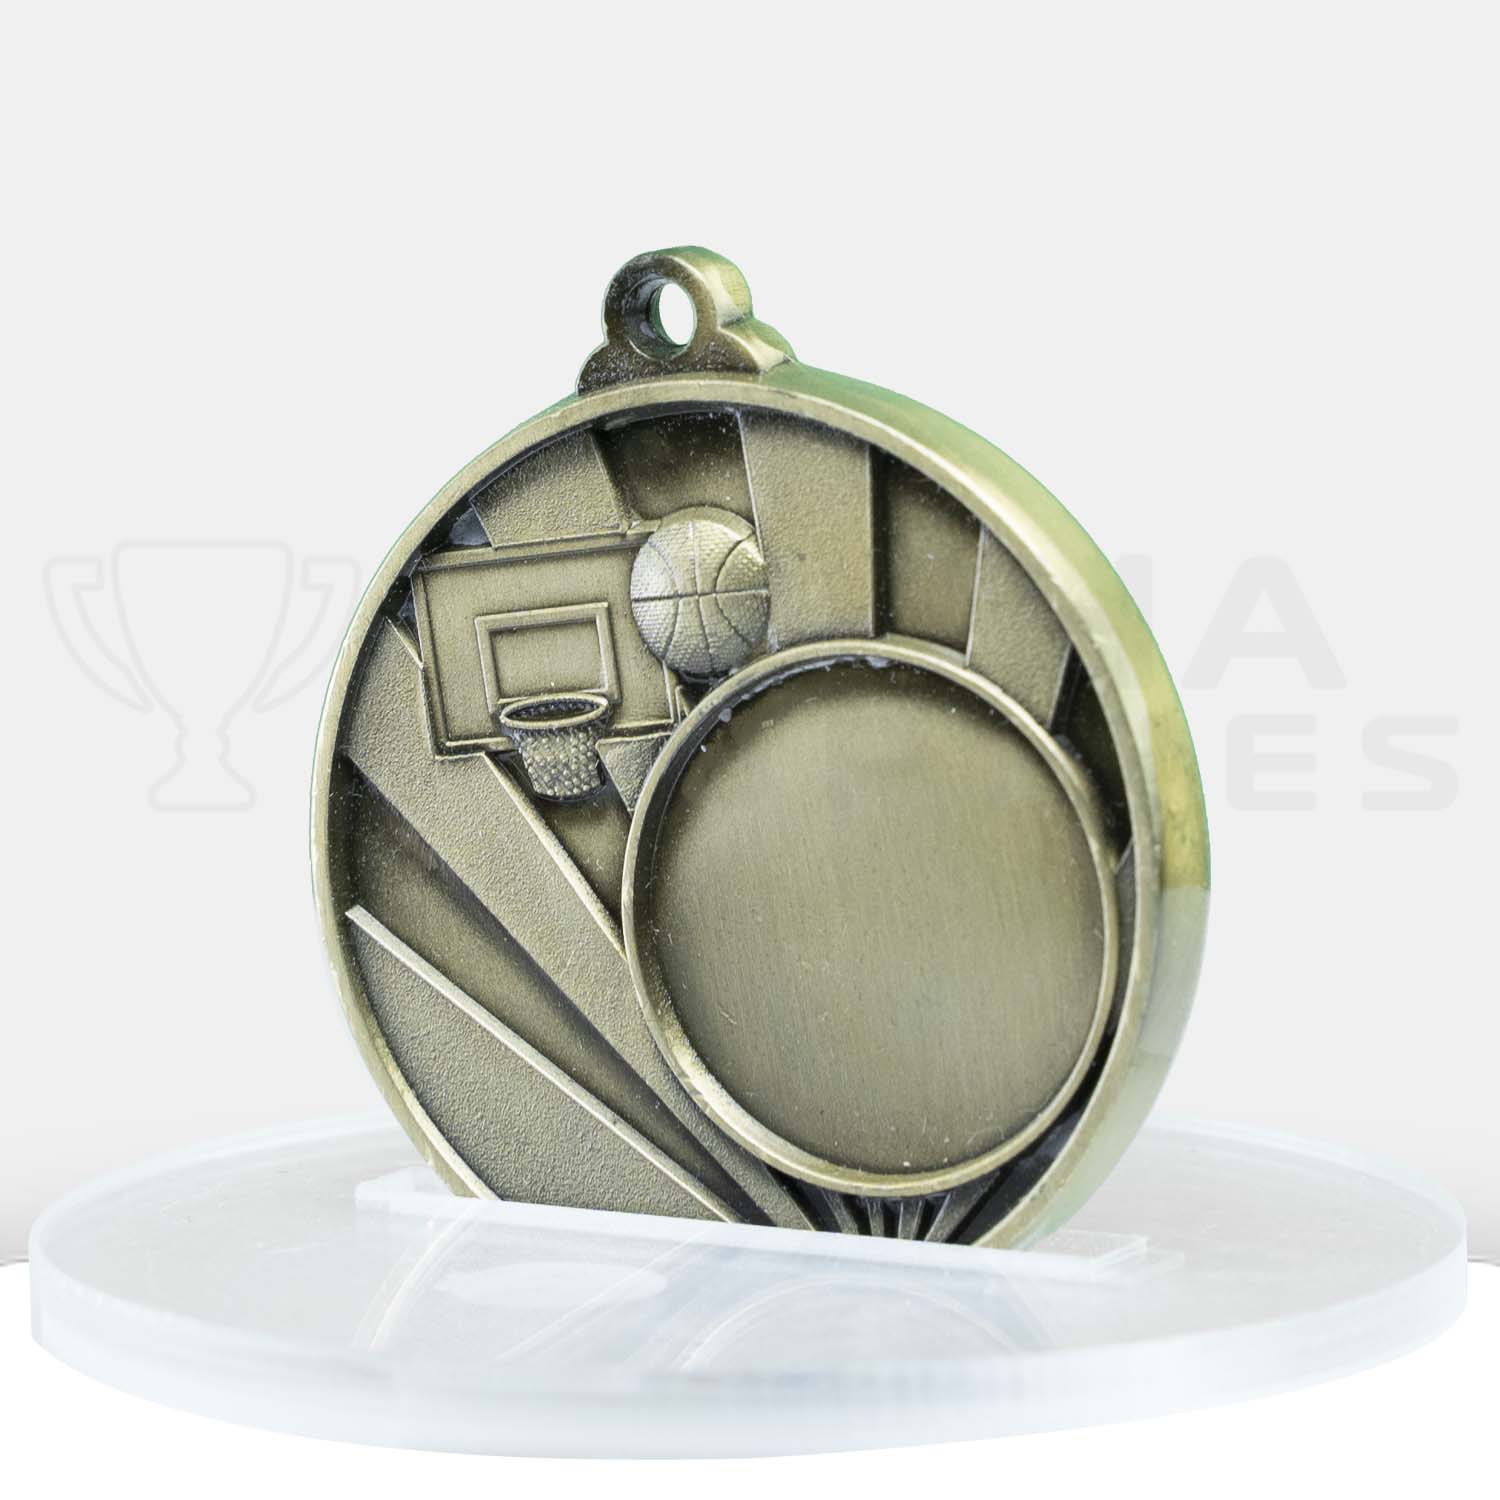 sunrise-medal-basketball-25mm-insert-gold-1076c-7g-side